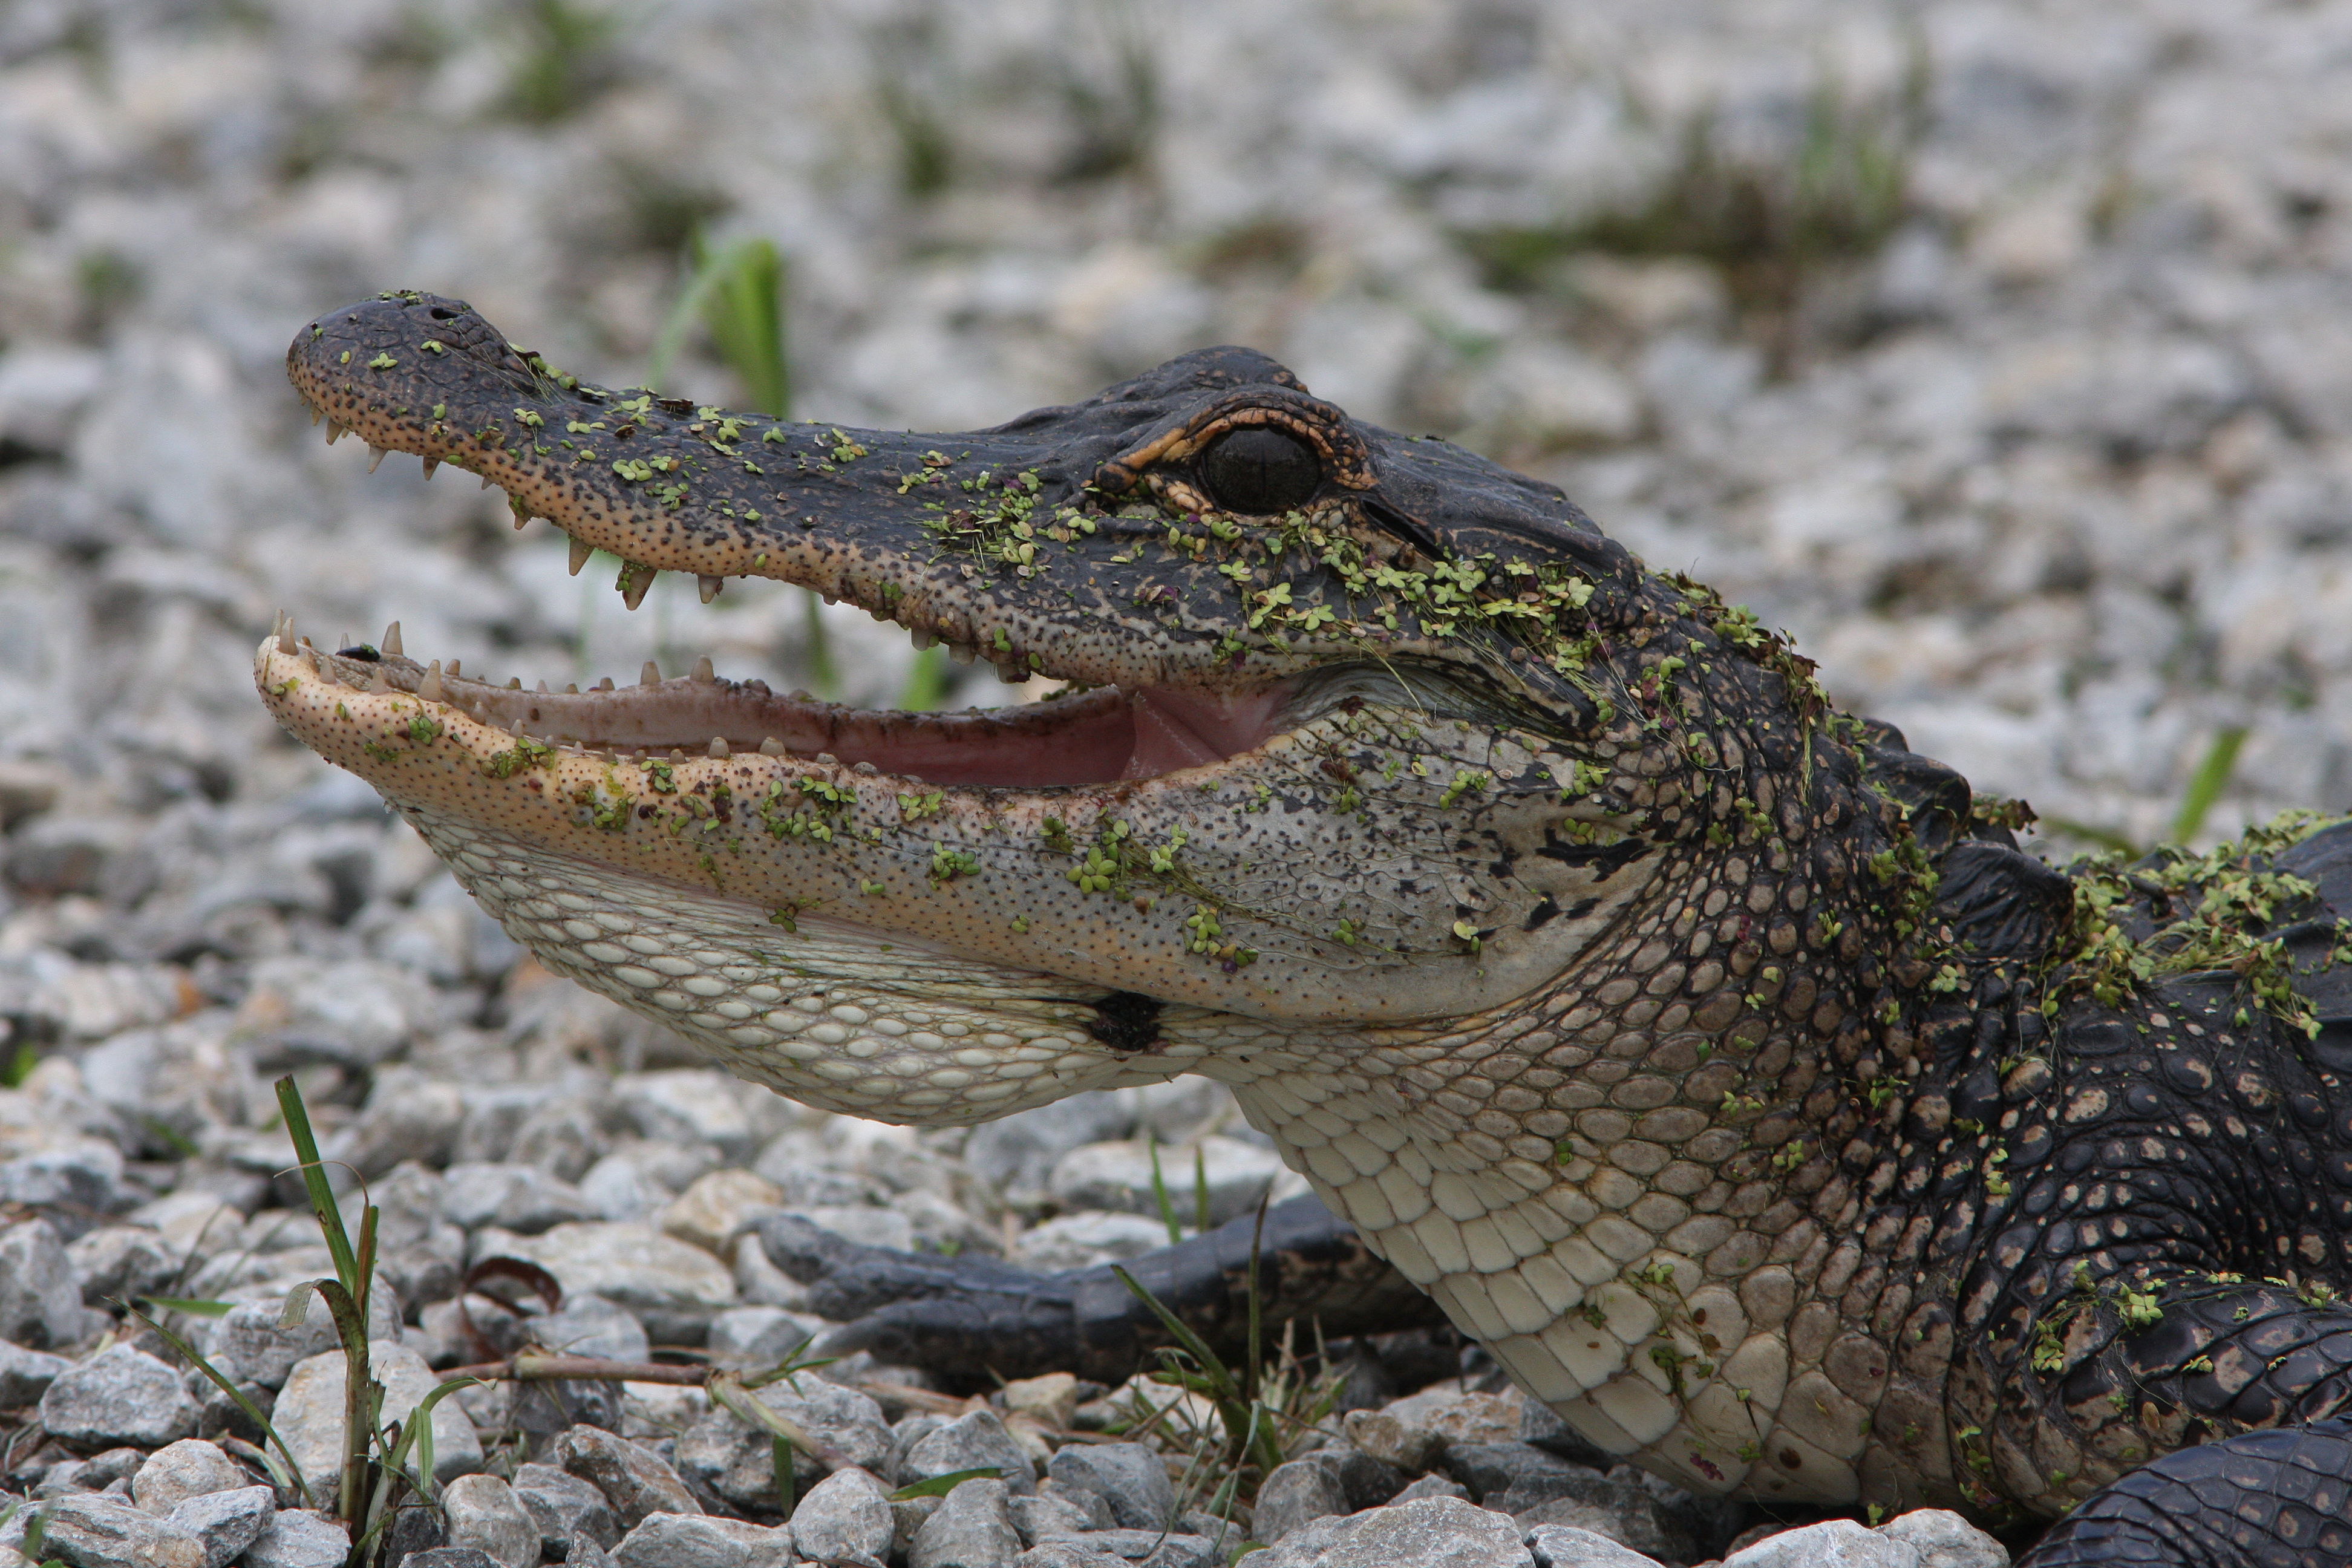 Smiling Alligator